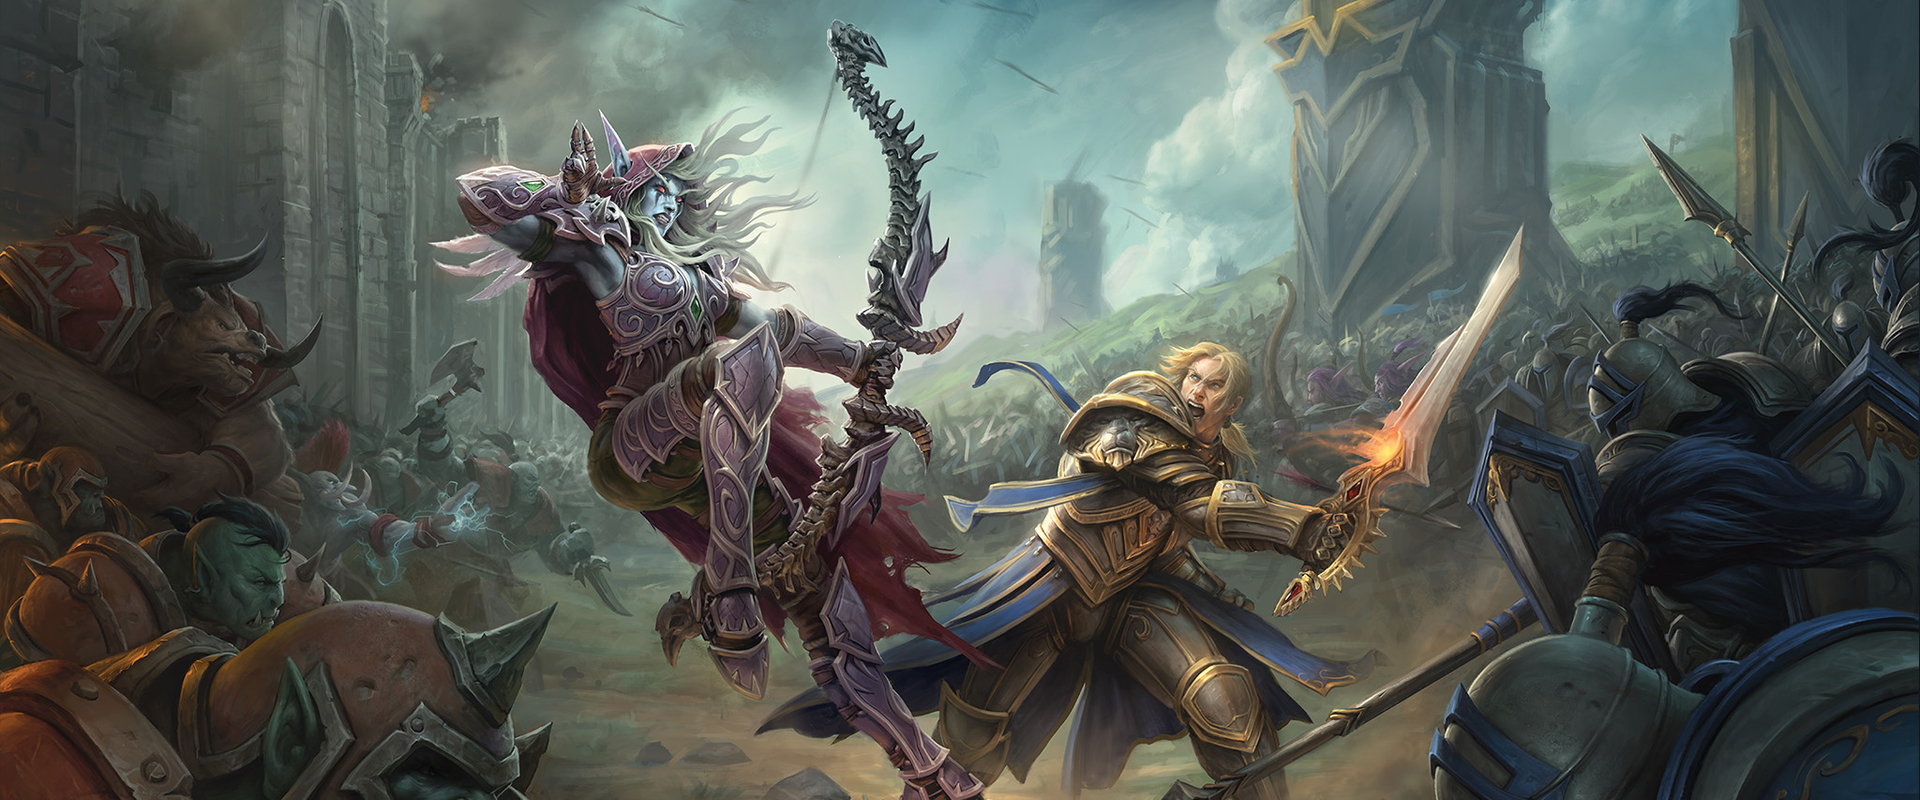 Hatalmas csatákat hoz a World of Warcraft új kiegészítője!